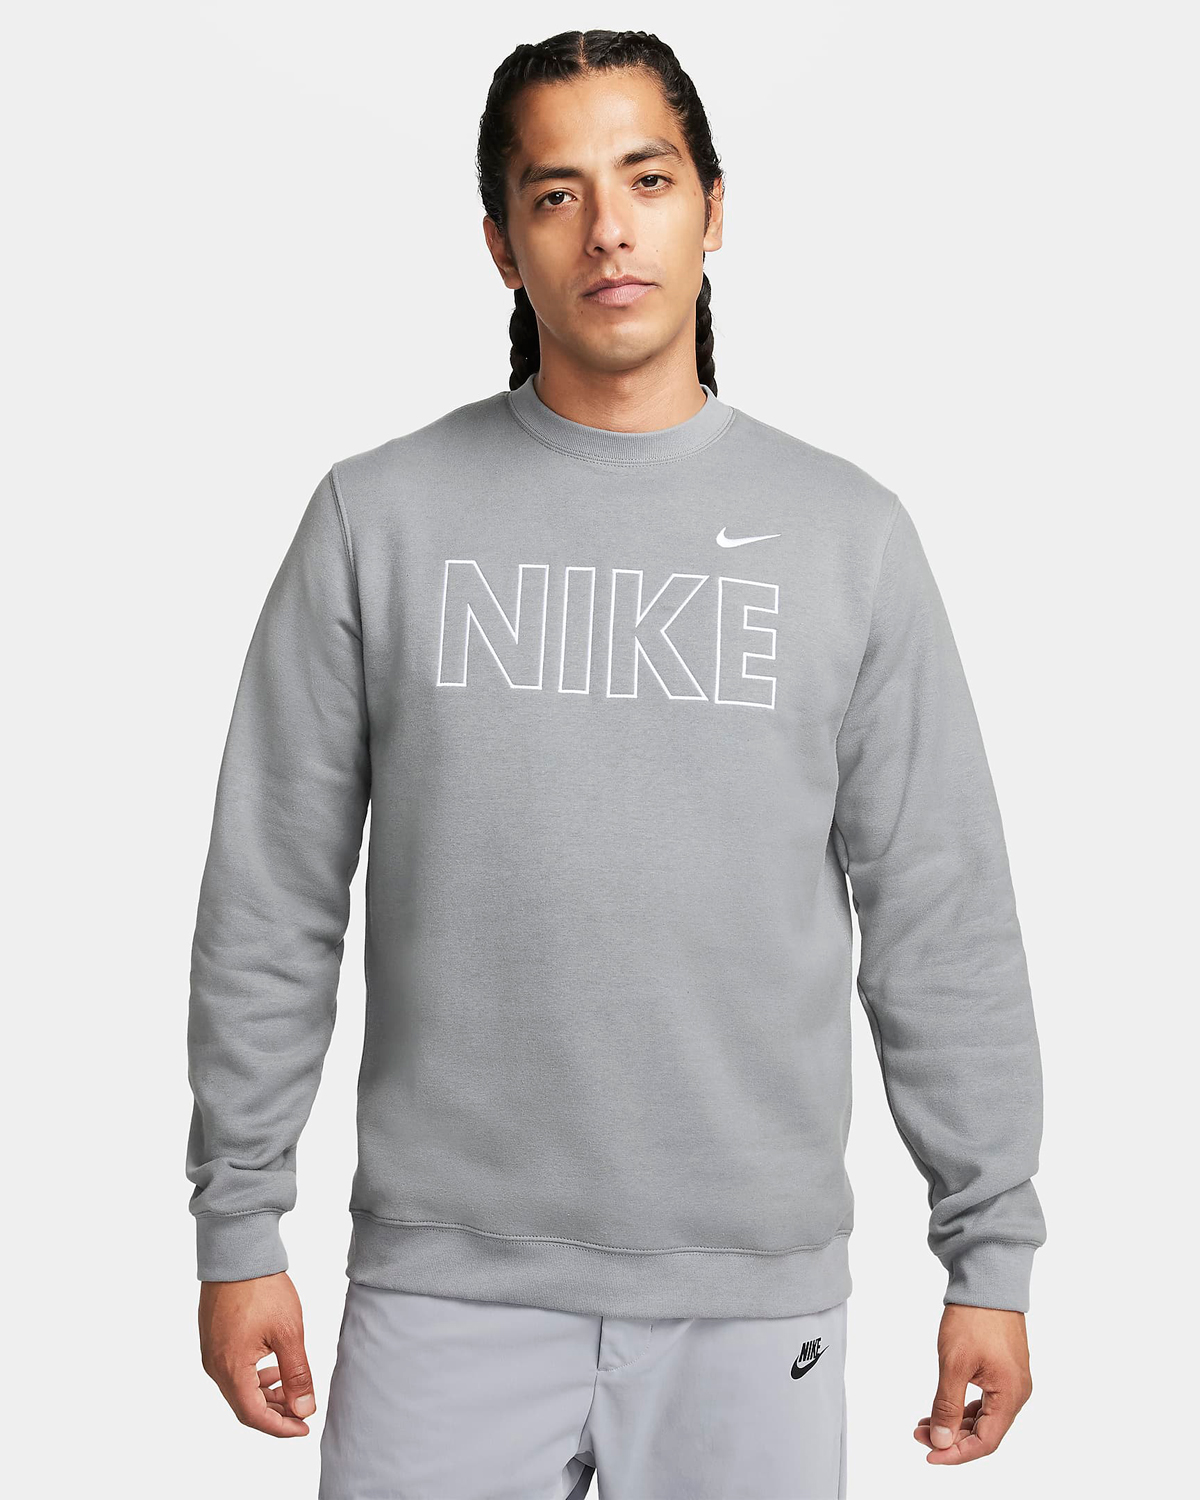 Nike-Sportswear-Club-Fleece-Sweatshirt-Cool-Grey